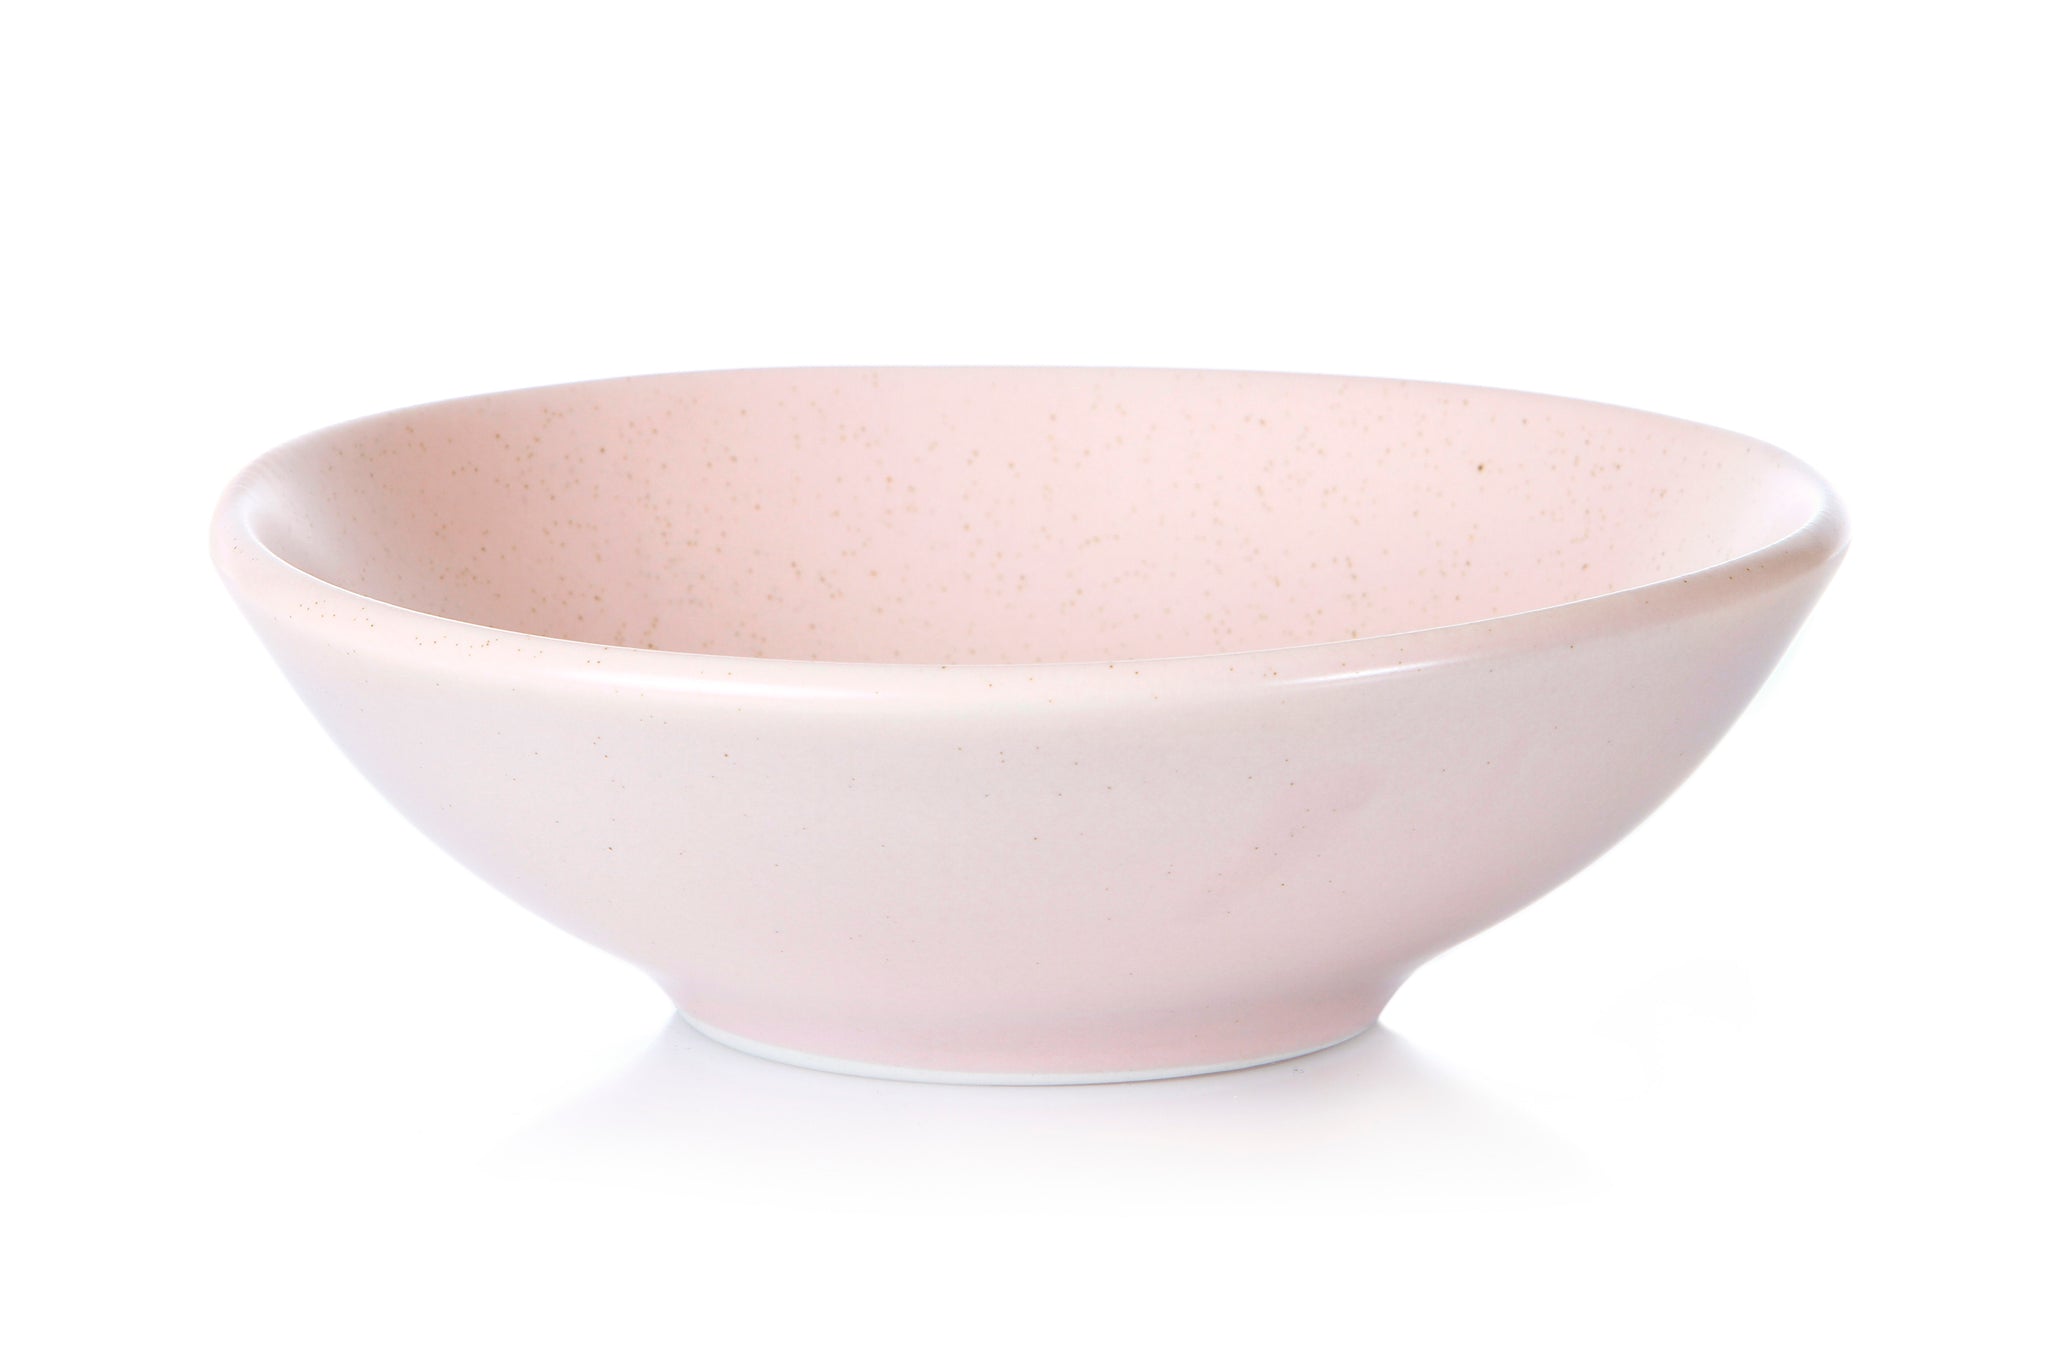 Elemental 21cm Salad Bowl - Rose Pink (4 Pack)